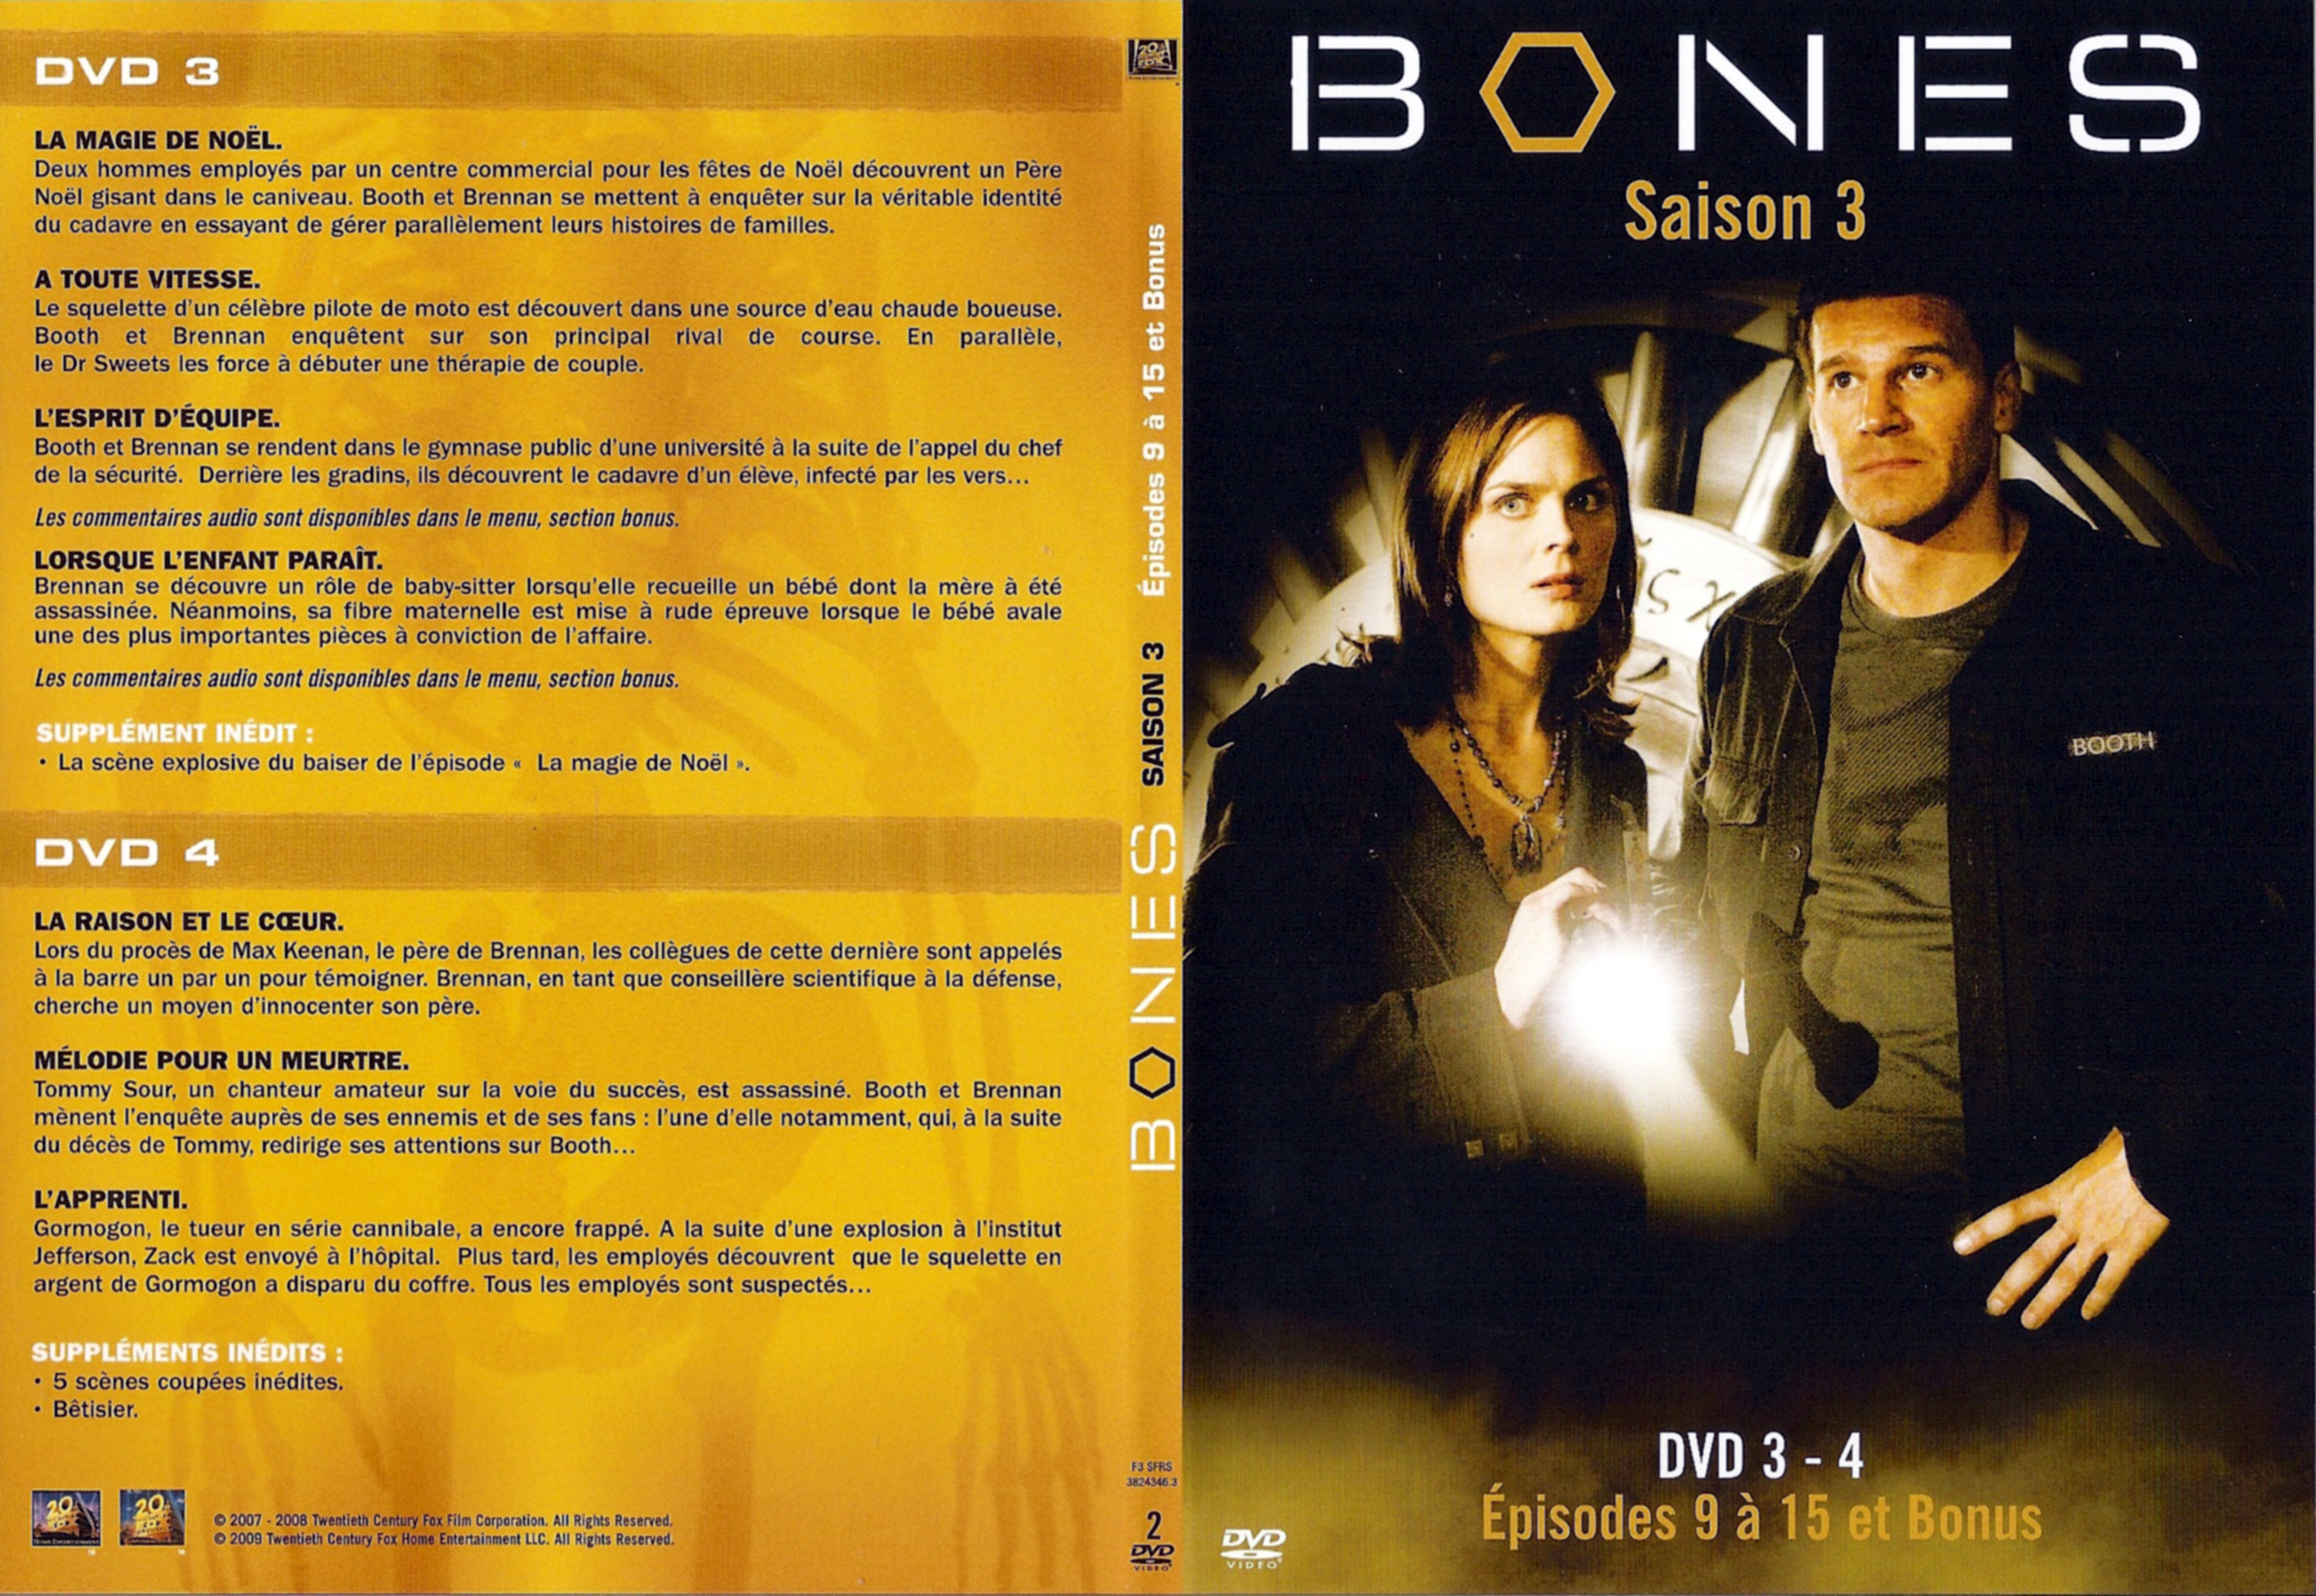 Jaquette DVD Bones Saison 3 DVD 3